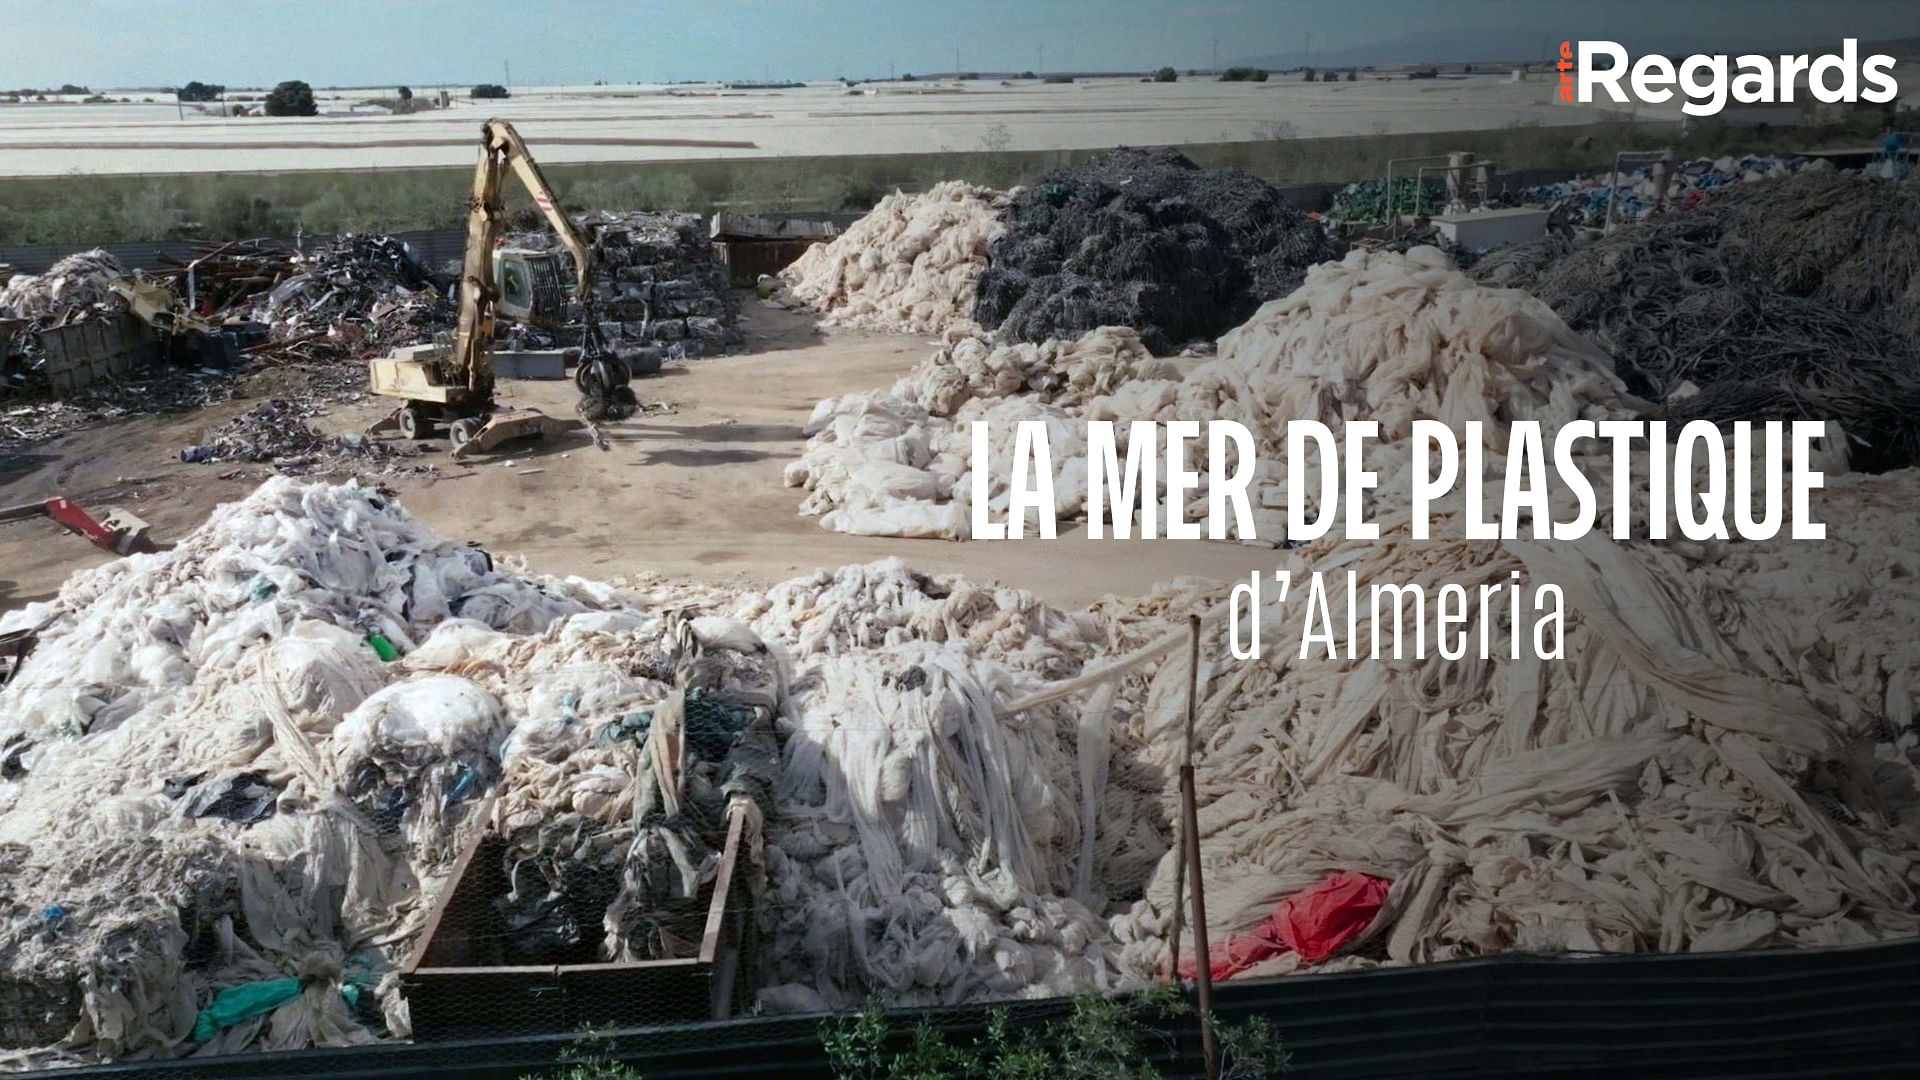 ARTE Regards - La mer de plastique d’Almeria